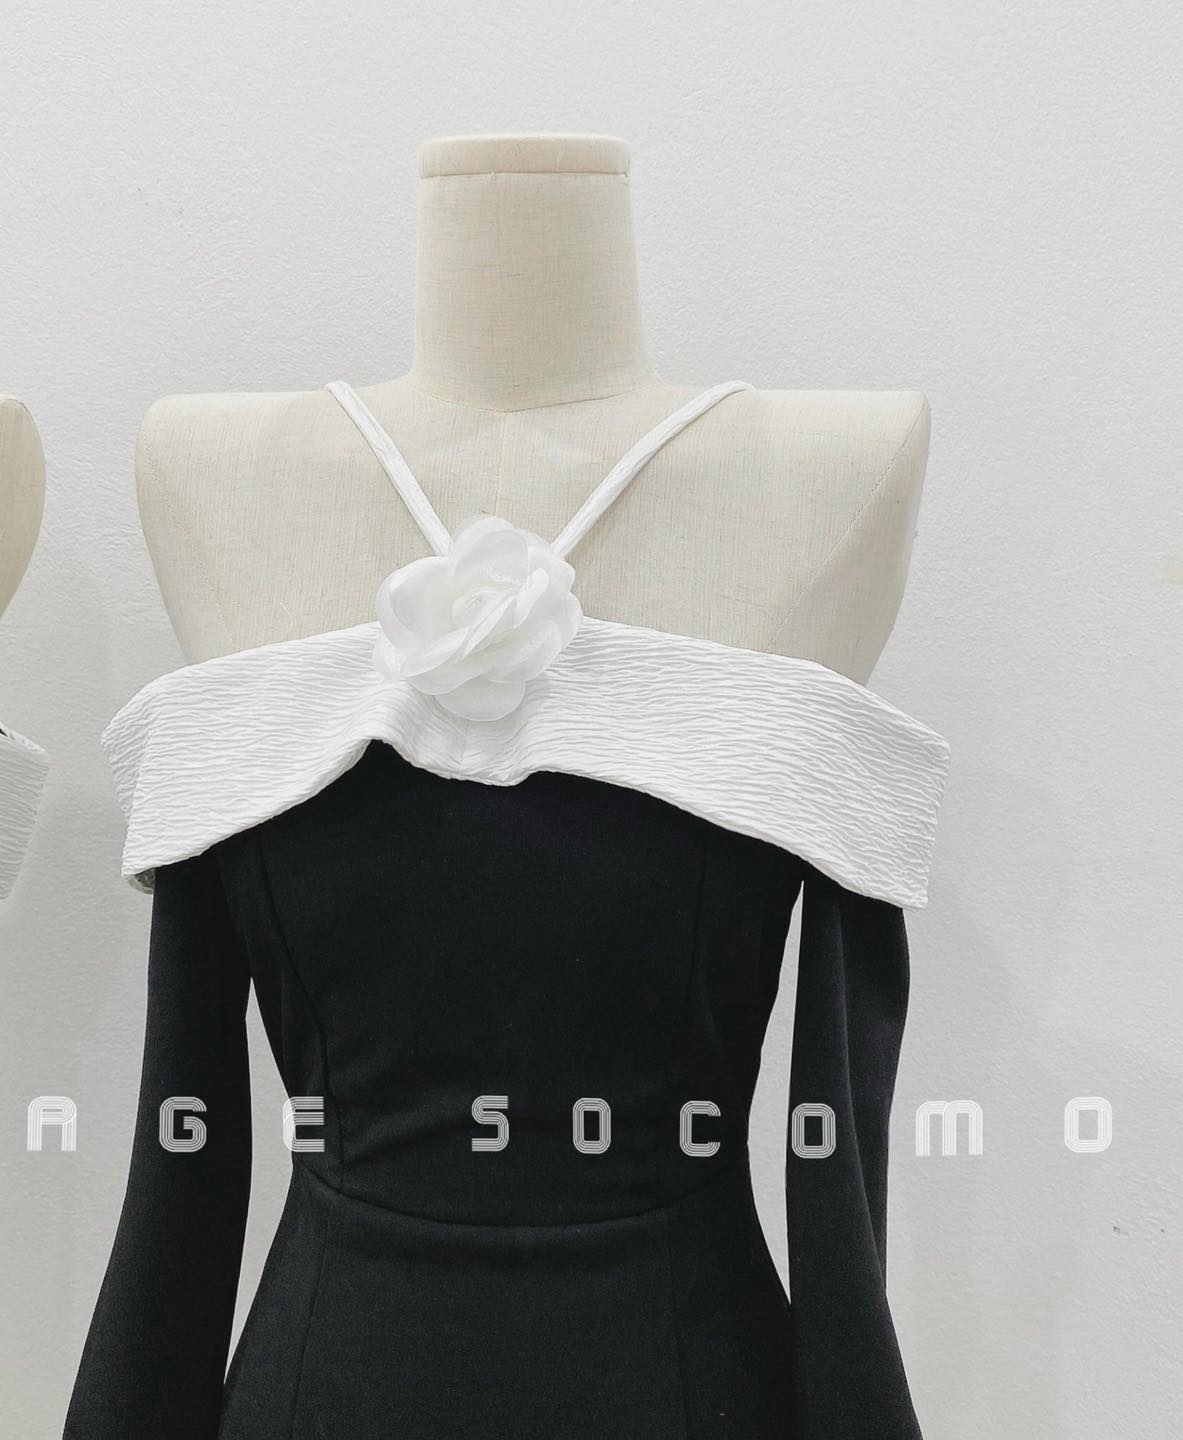 Váy đầm thiết kế đen cổ yếm hoa viền trắng sang chảnh Socomo V1382022 